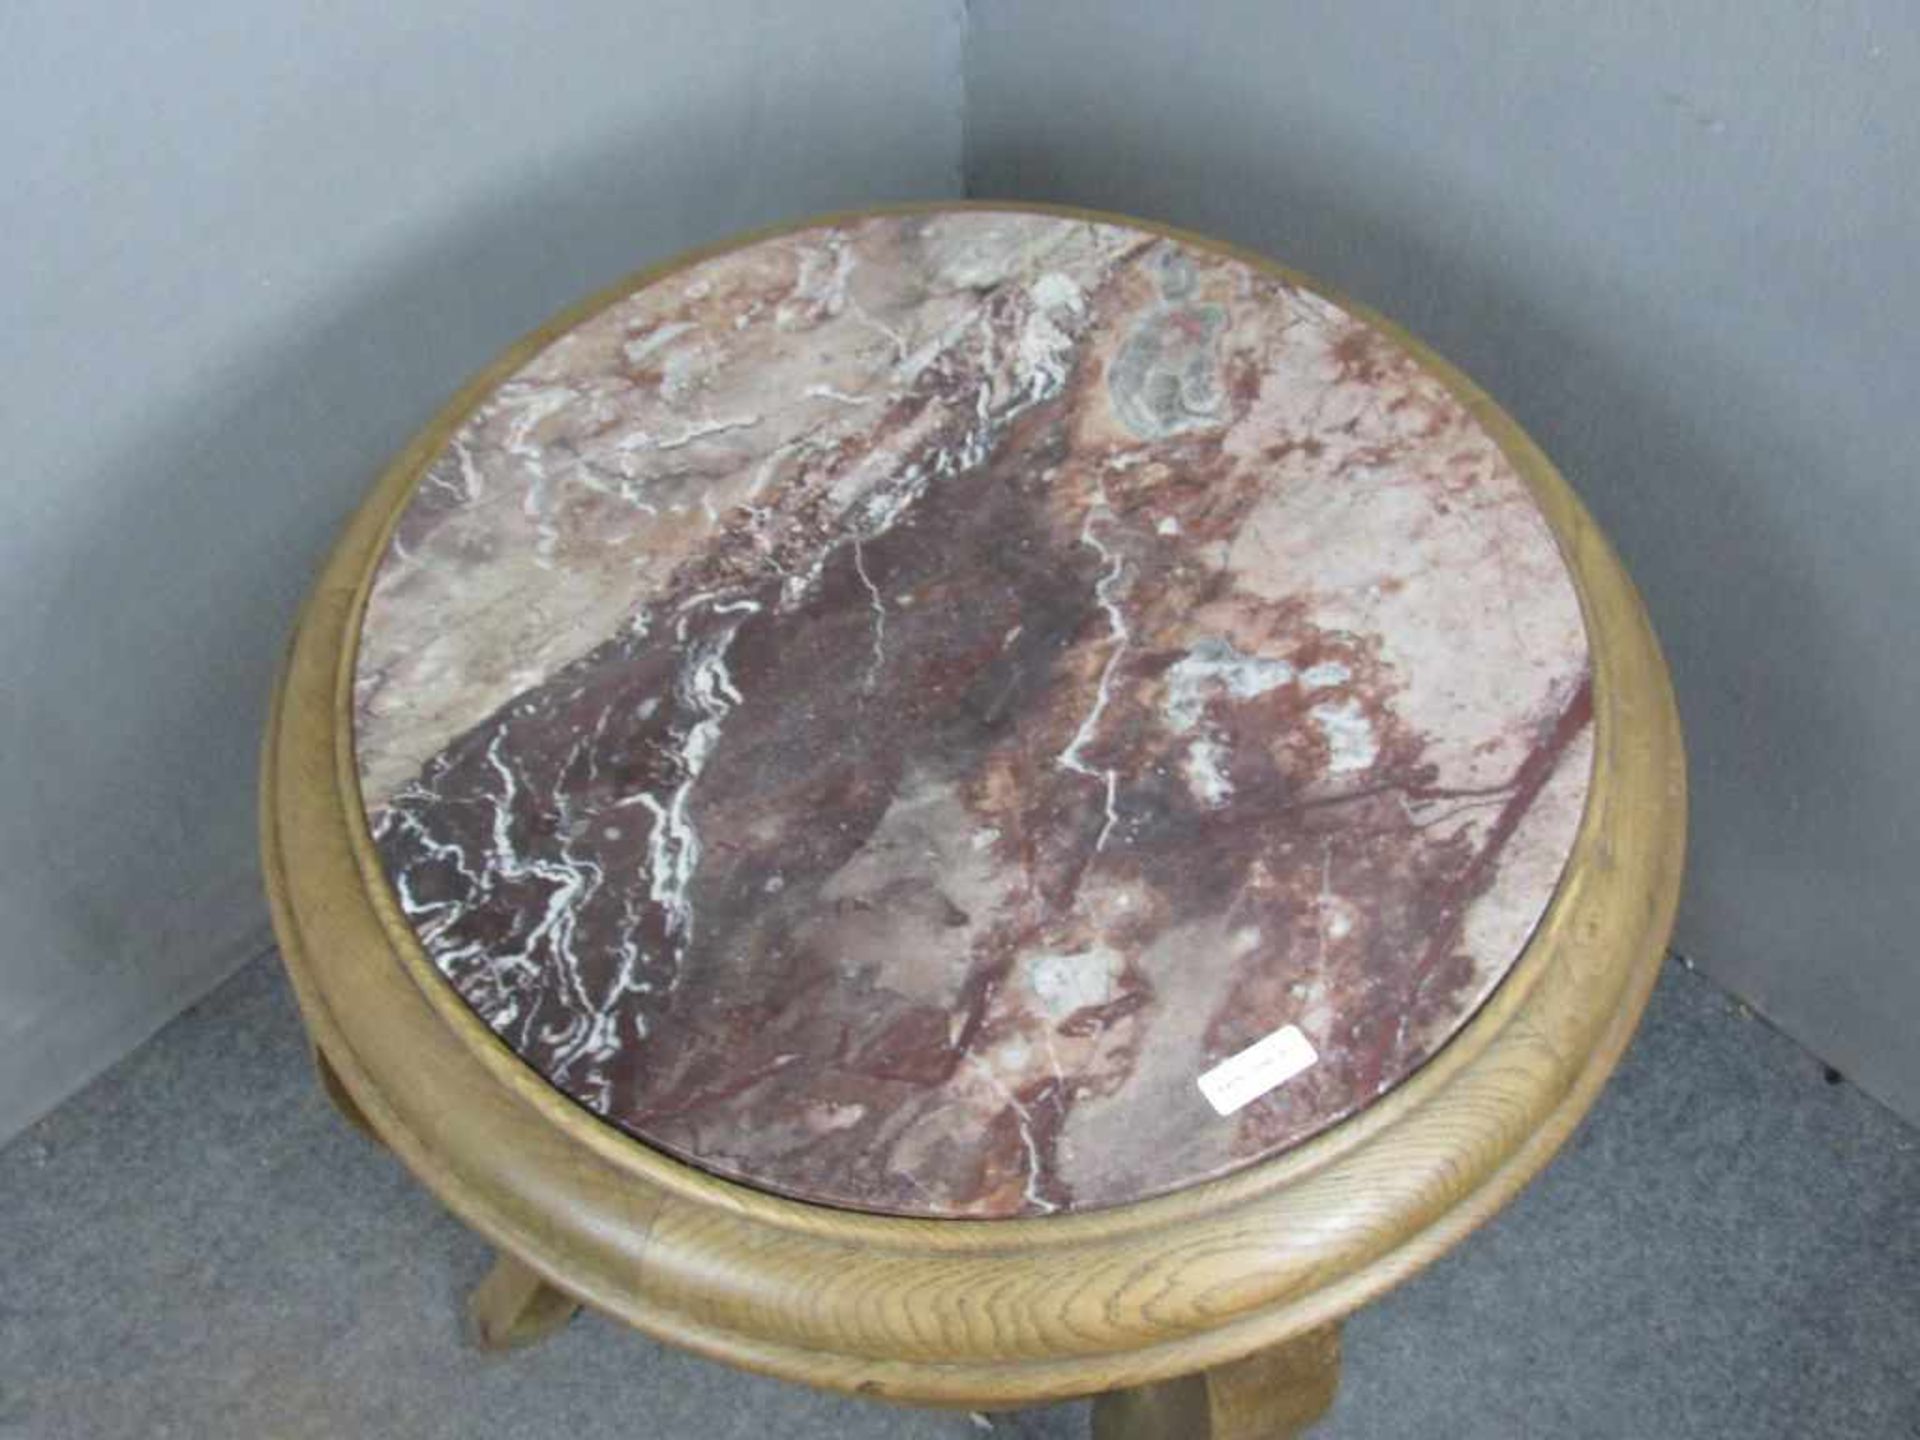 Art Deco tisch mit Marmorplatte 70cm Durchmesser - Image 2 of 2